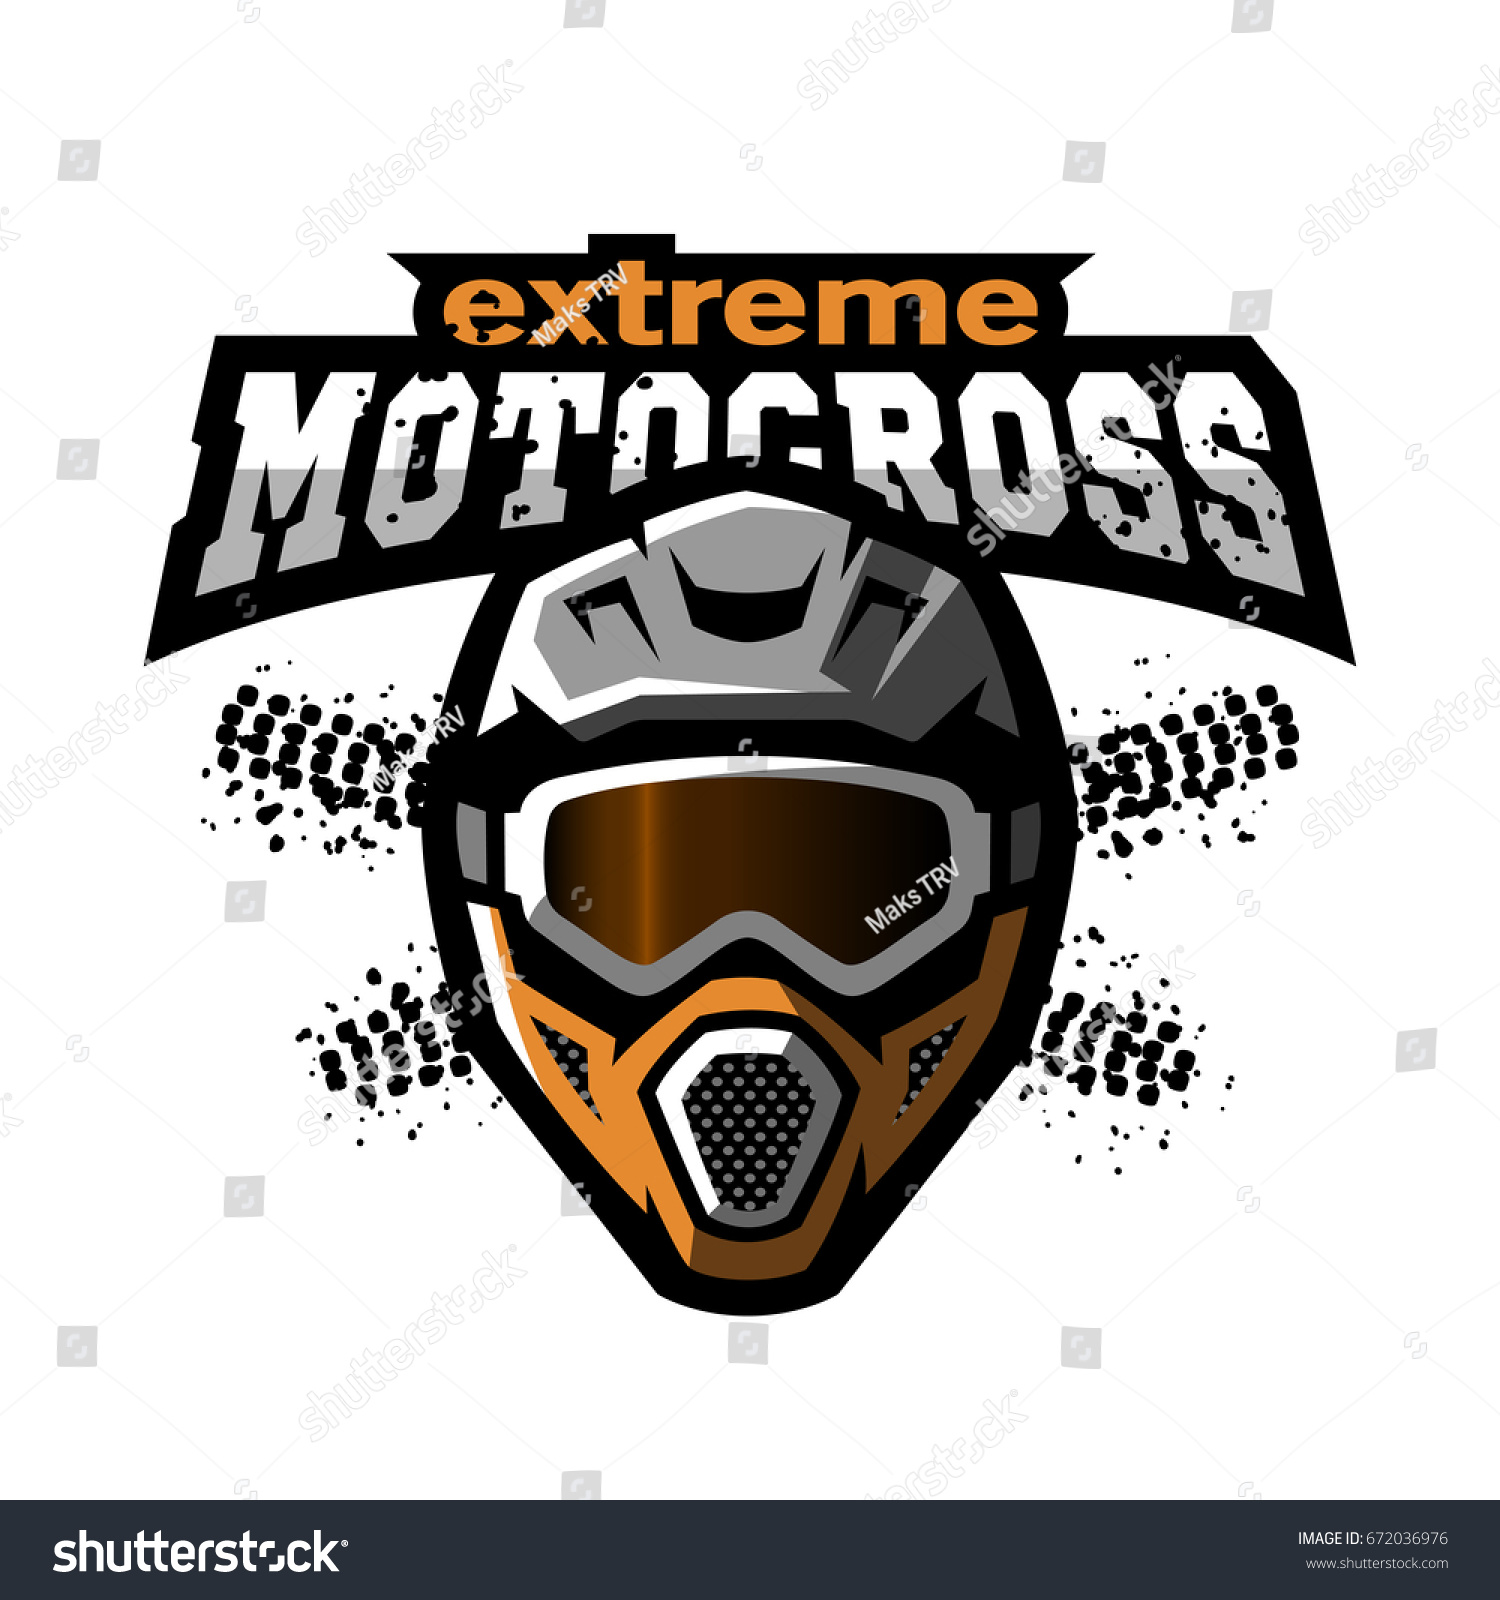 Extreme Motocross Logo Stock Vector 672036976 - Shutterstock